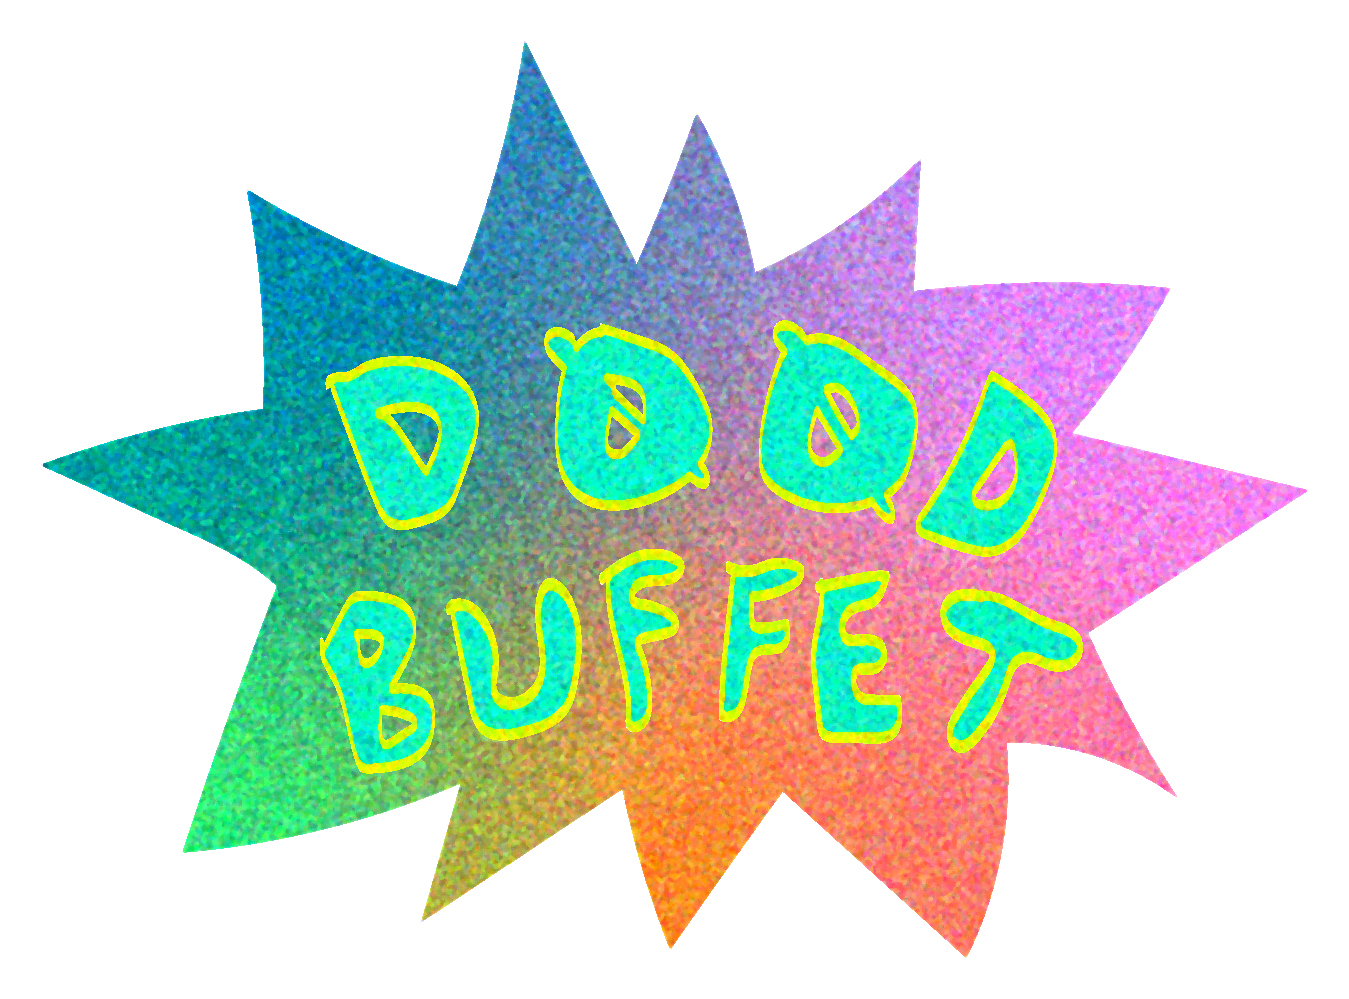 d00dbuffet-logo